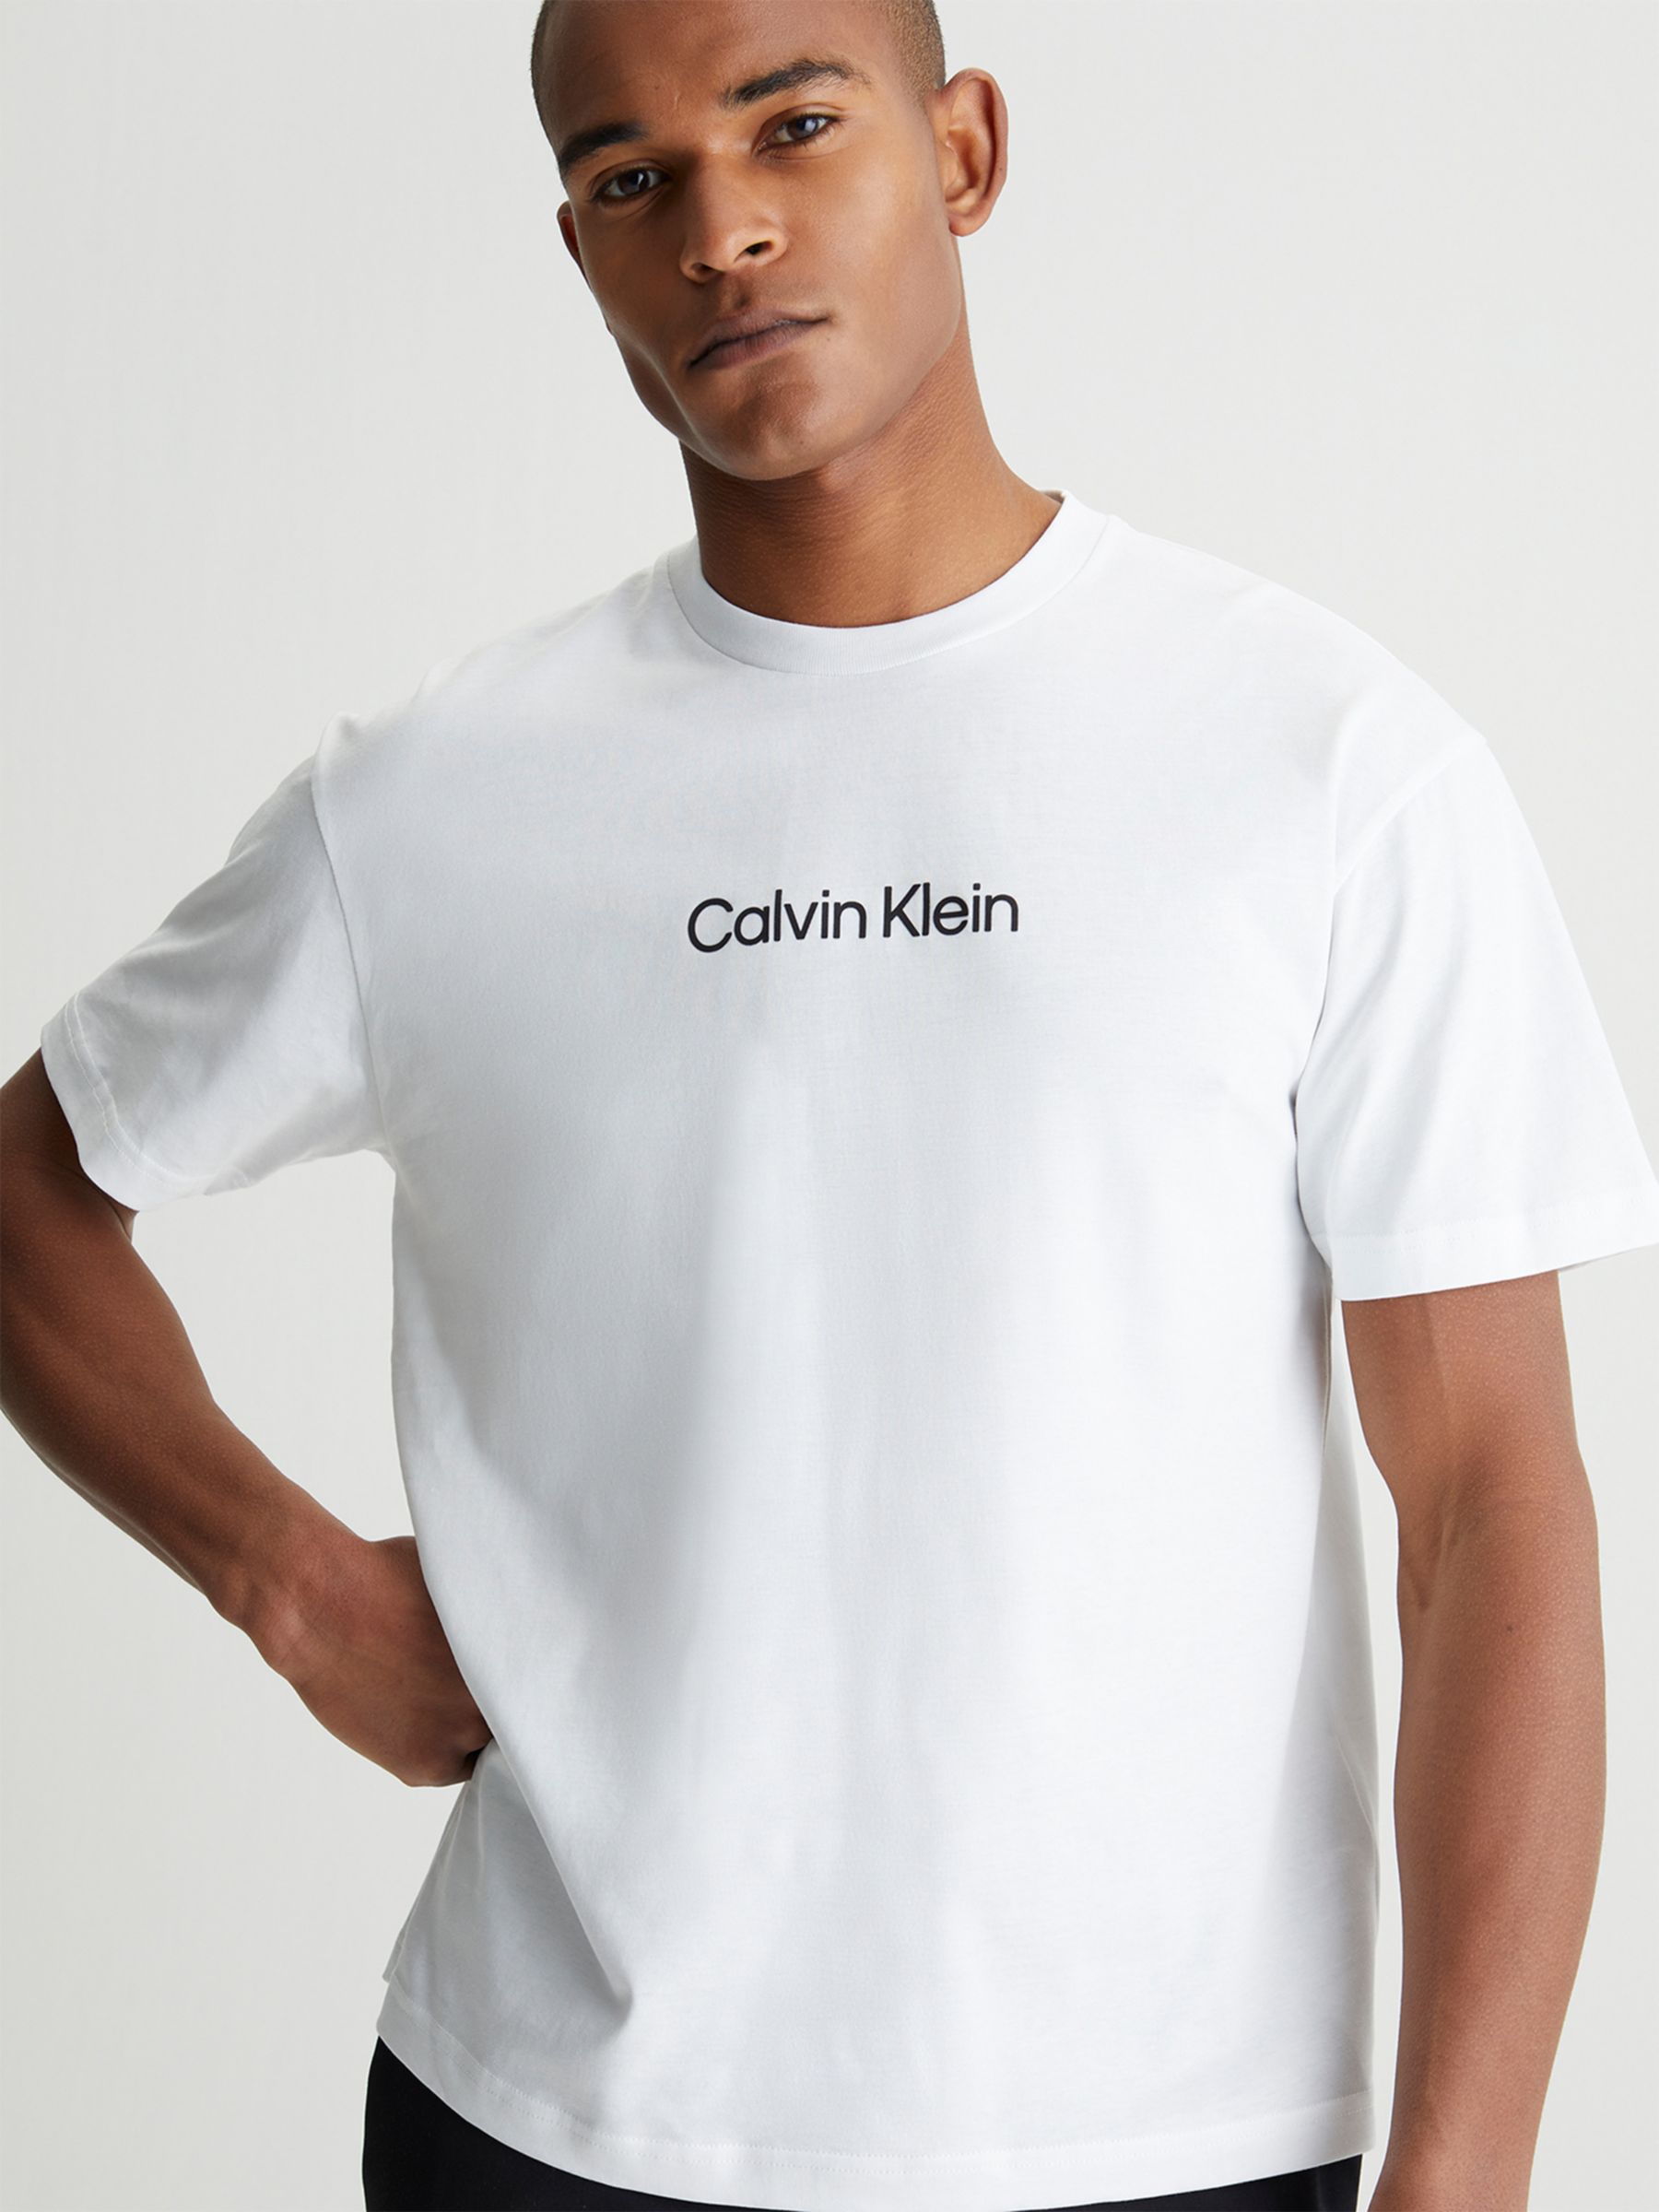 Calvin Klein Comfort T-Shirt, White at John Lewis & Partners